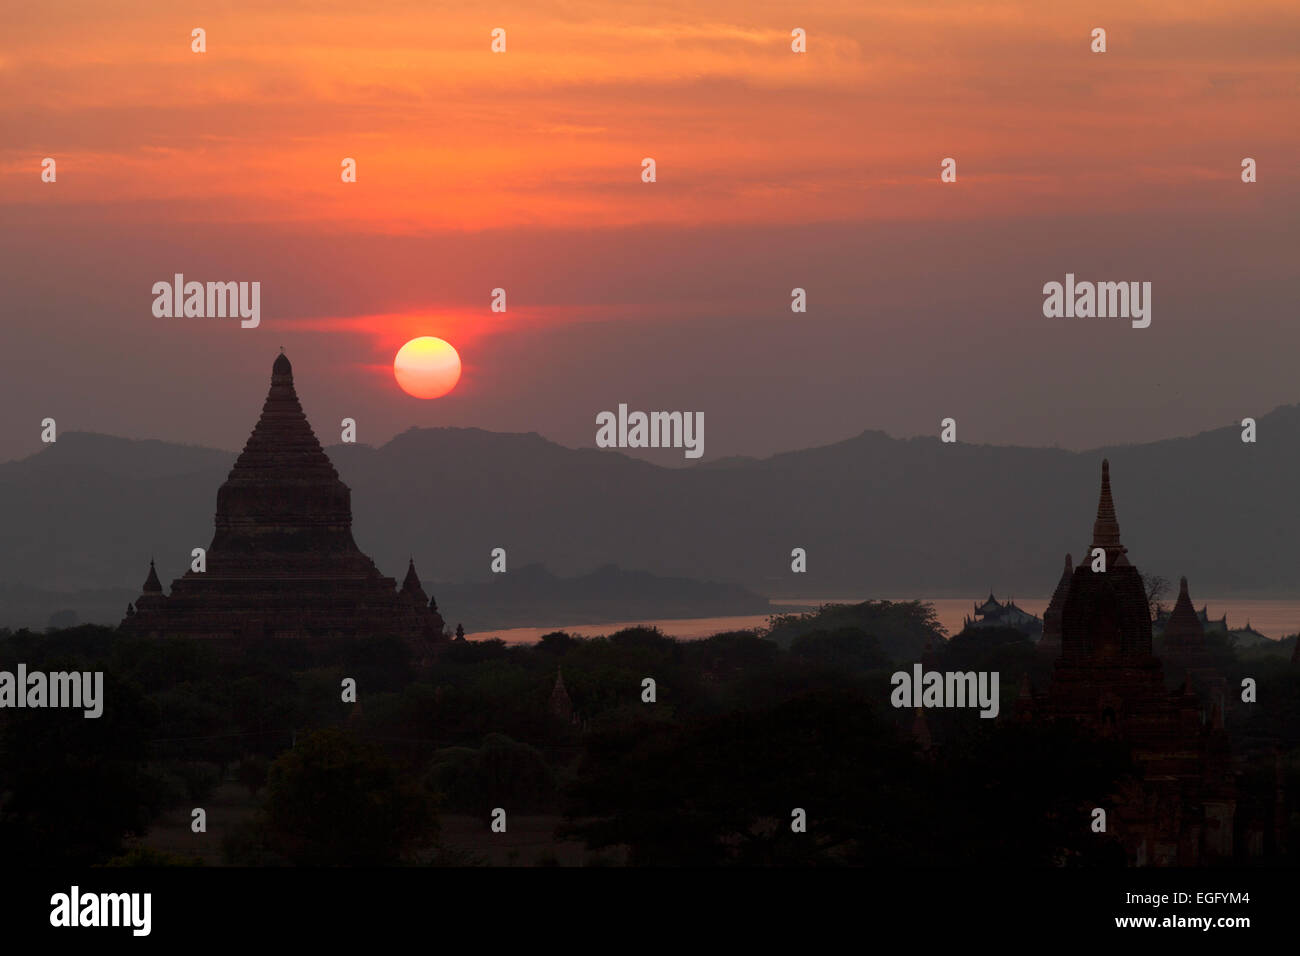 Sunset over temples, Bagan, Myanmar ( Burma ), Asia Stock Photo